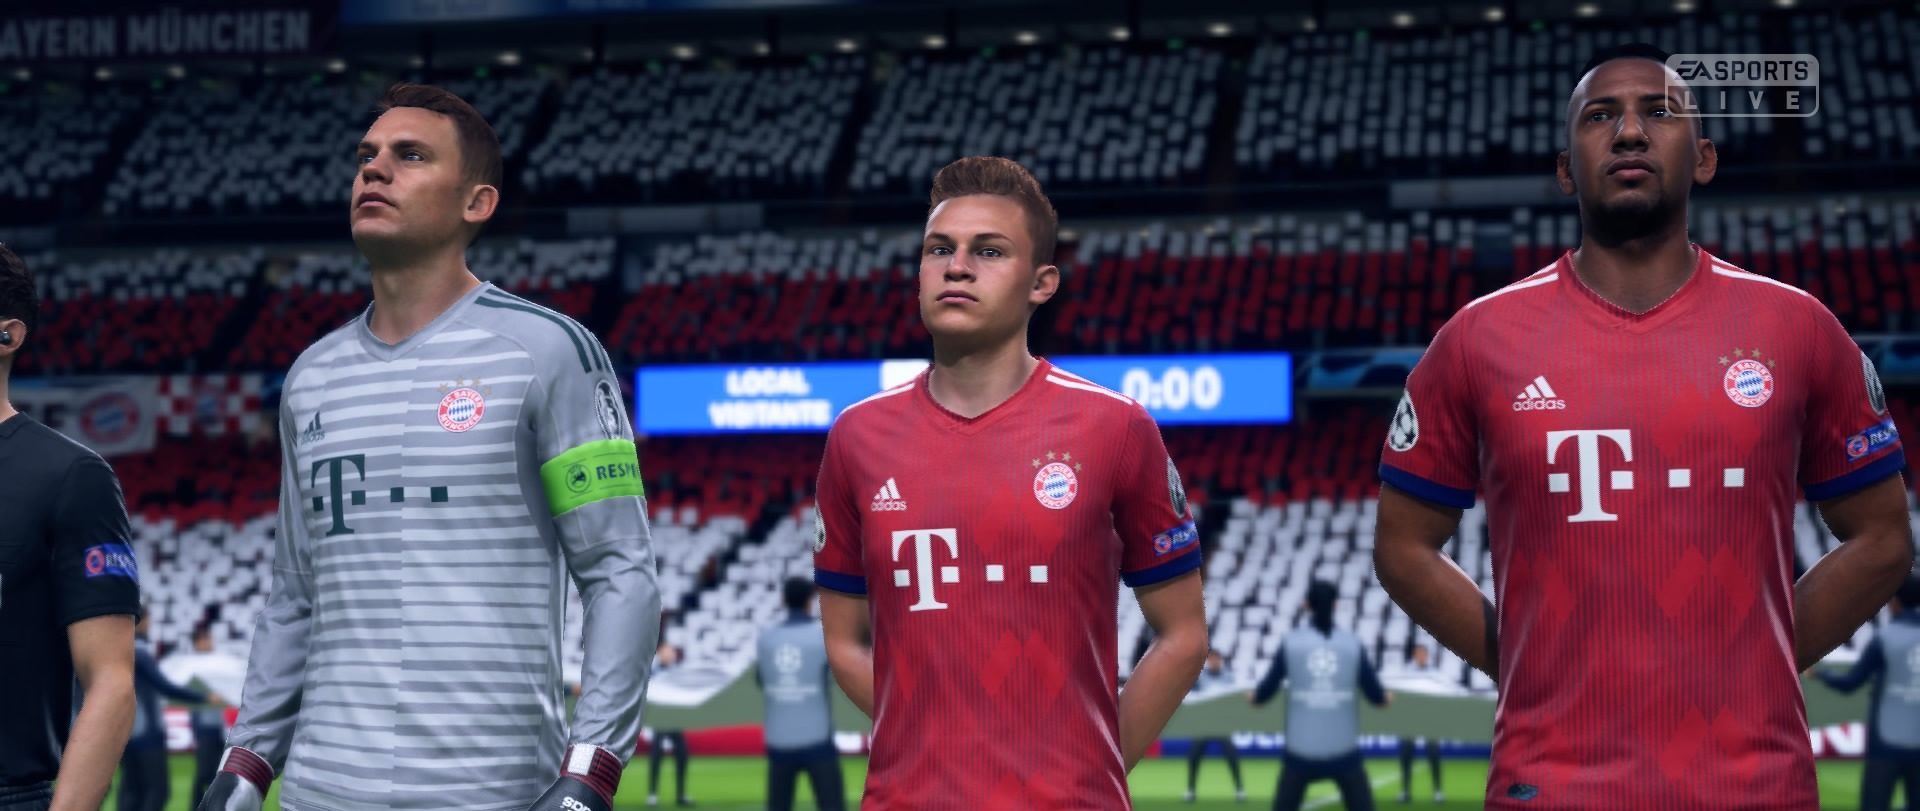 Die FIFA 19 Winter-Upgrades der Bundesliga sind live: Mit Reus, Kimmich